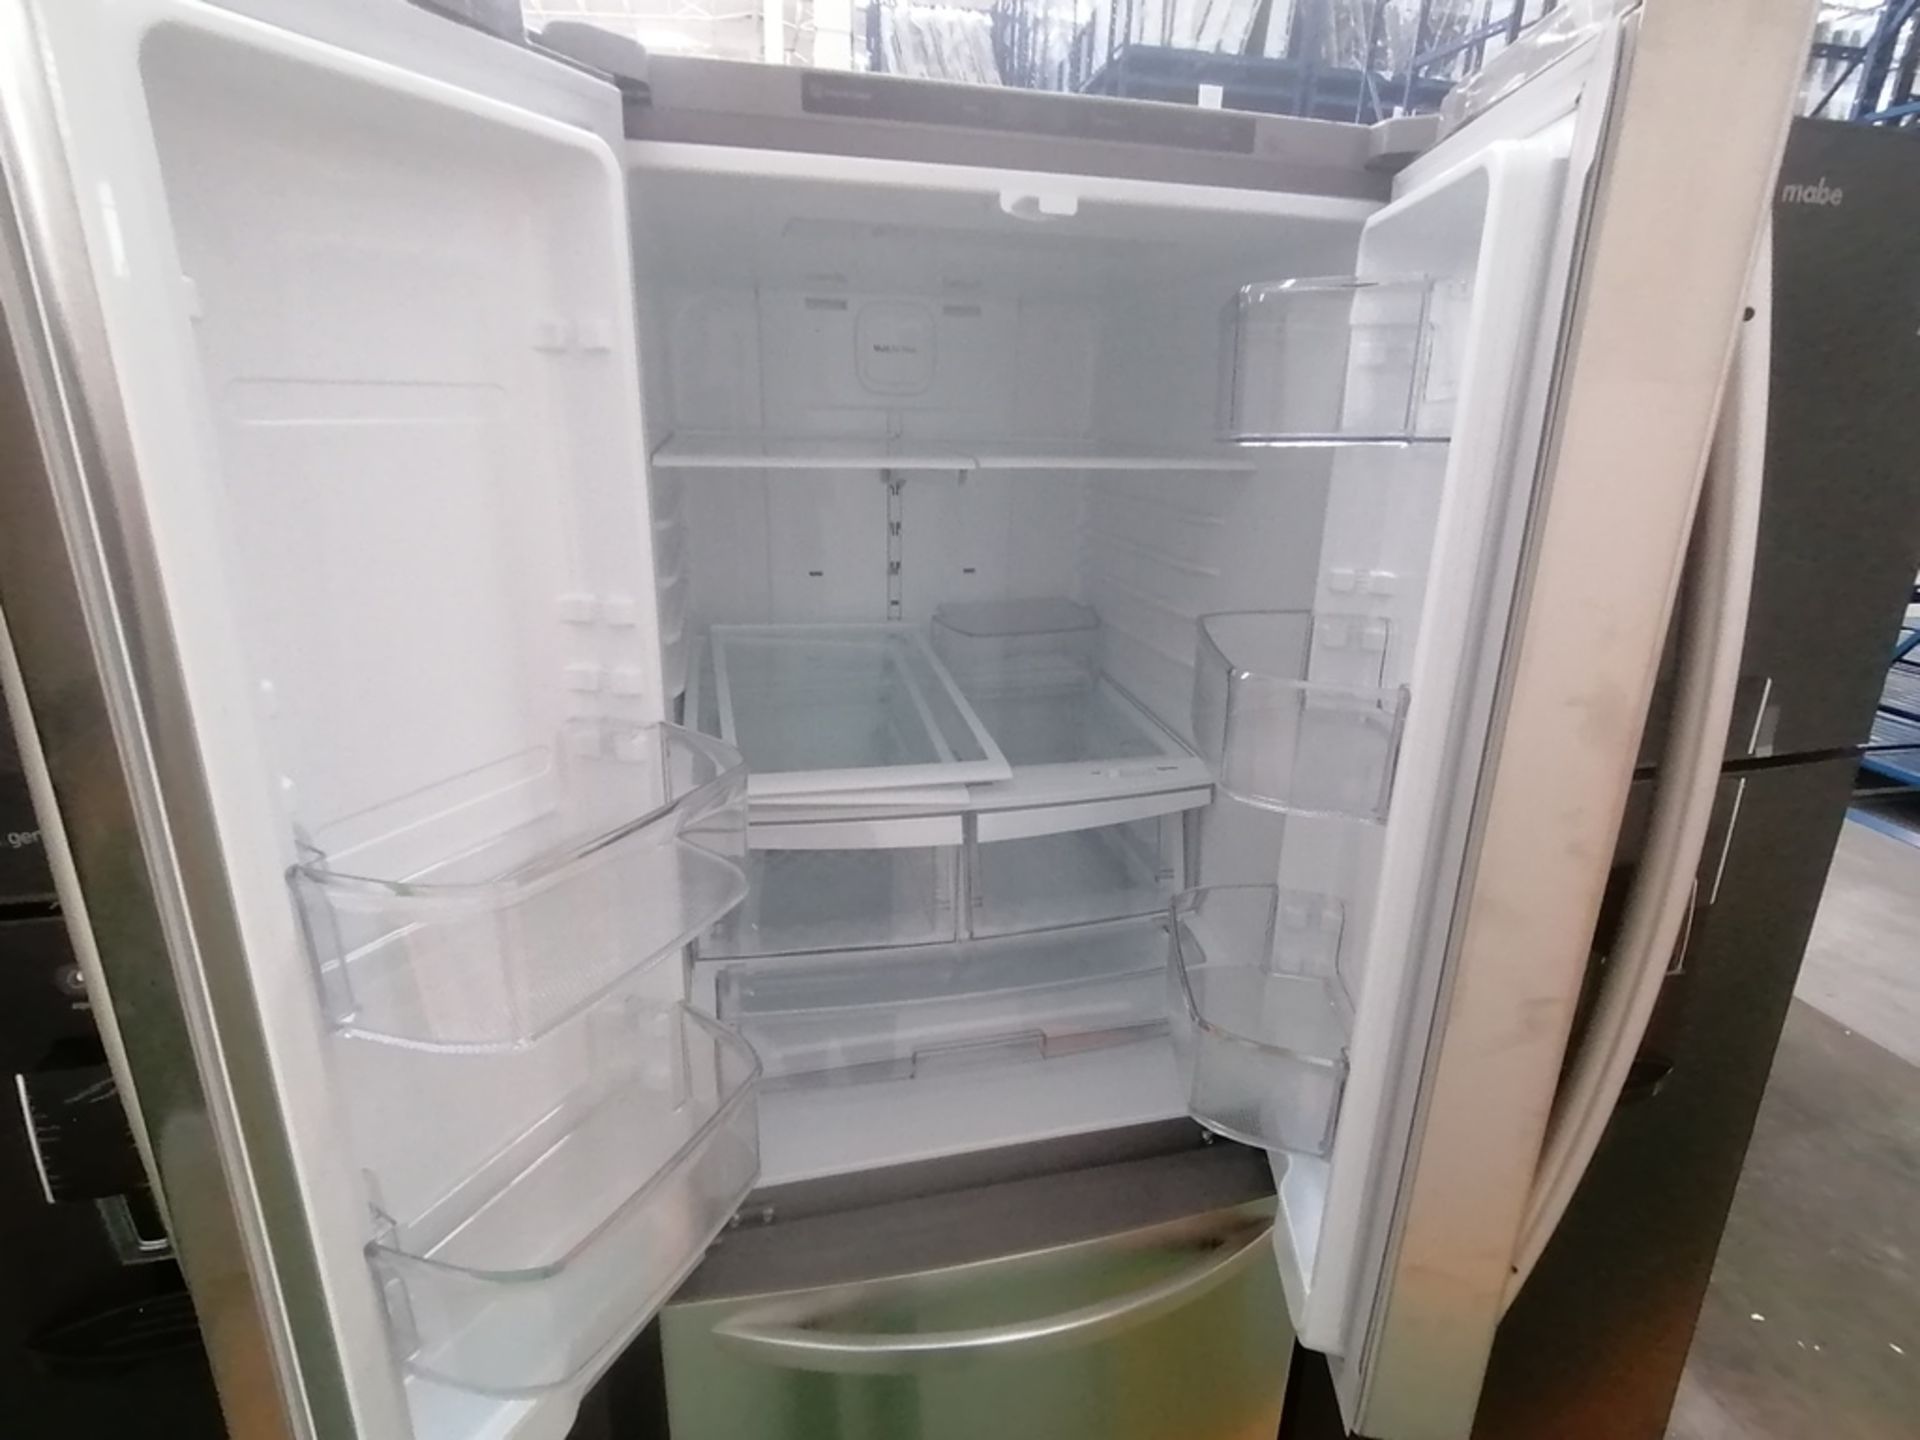 Lote de 2 refrigeradores incluye: 1 Refrigerador con dispensador de agua, Marca Mabe, Modelo RME360 - Image 12 of 15